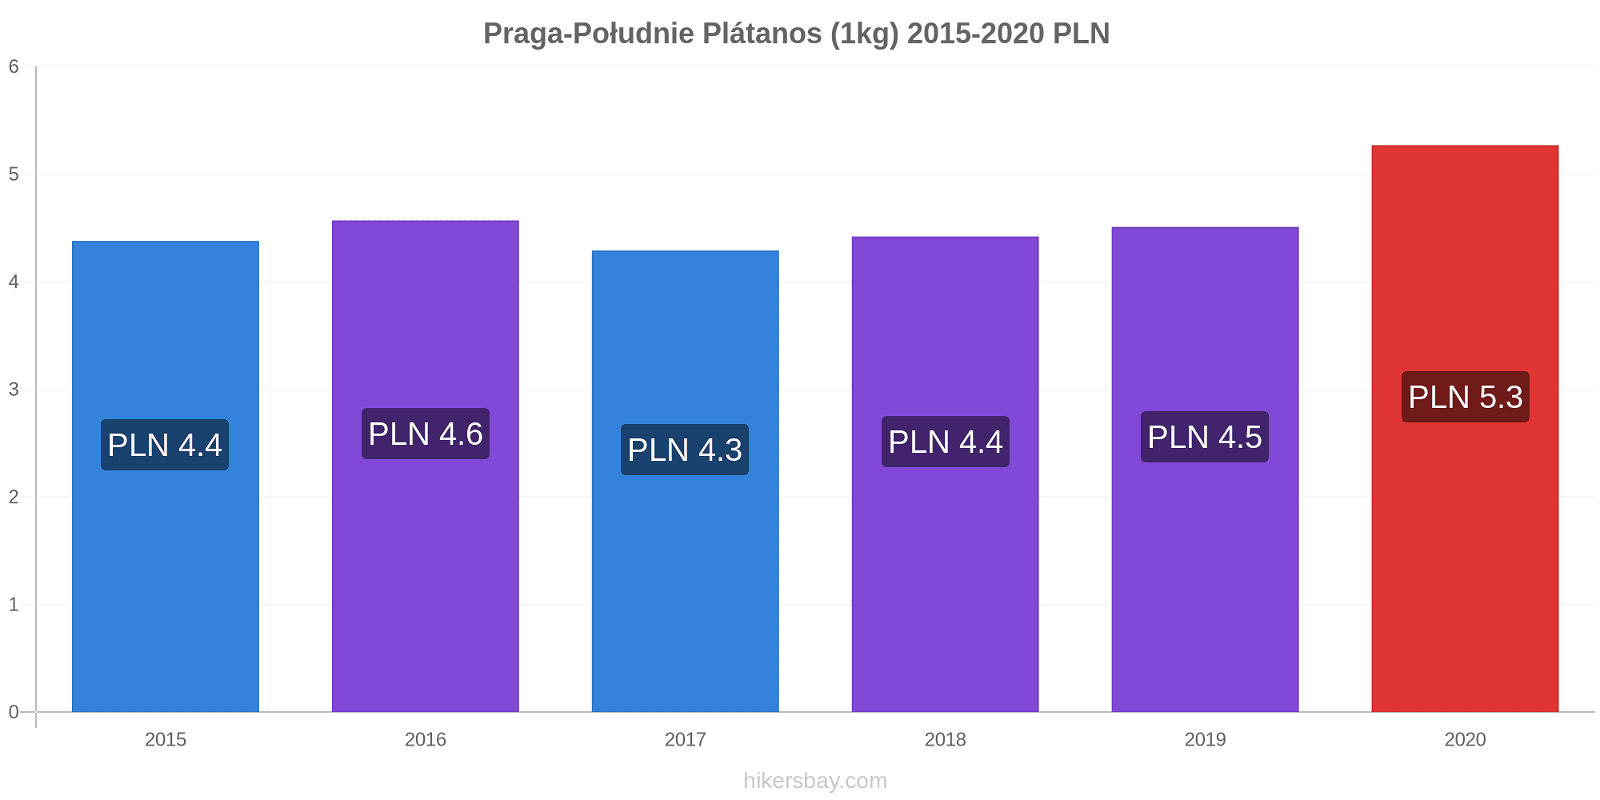 Praga-Południe cambios de precios Plátano (1kg) hikersbay.com